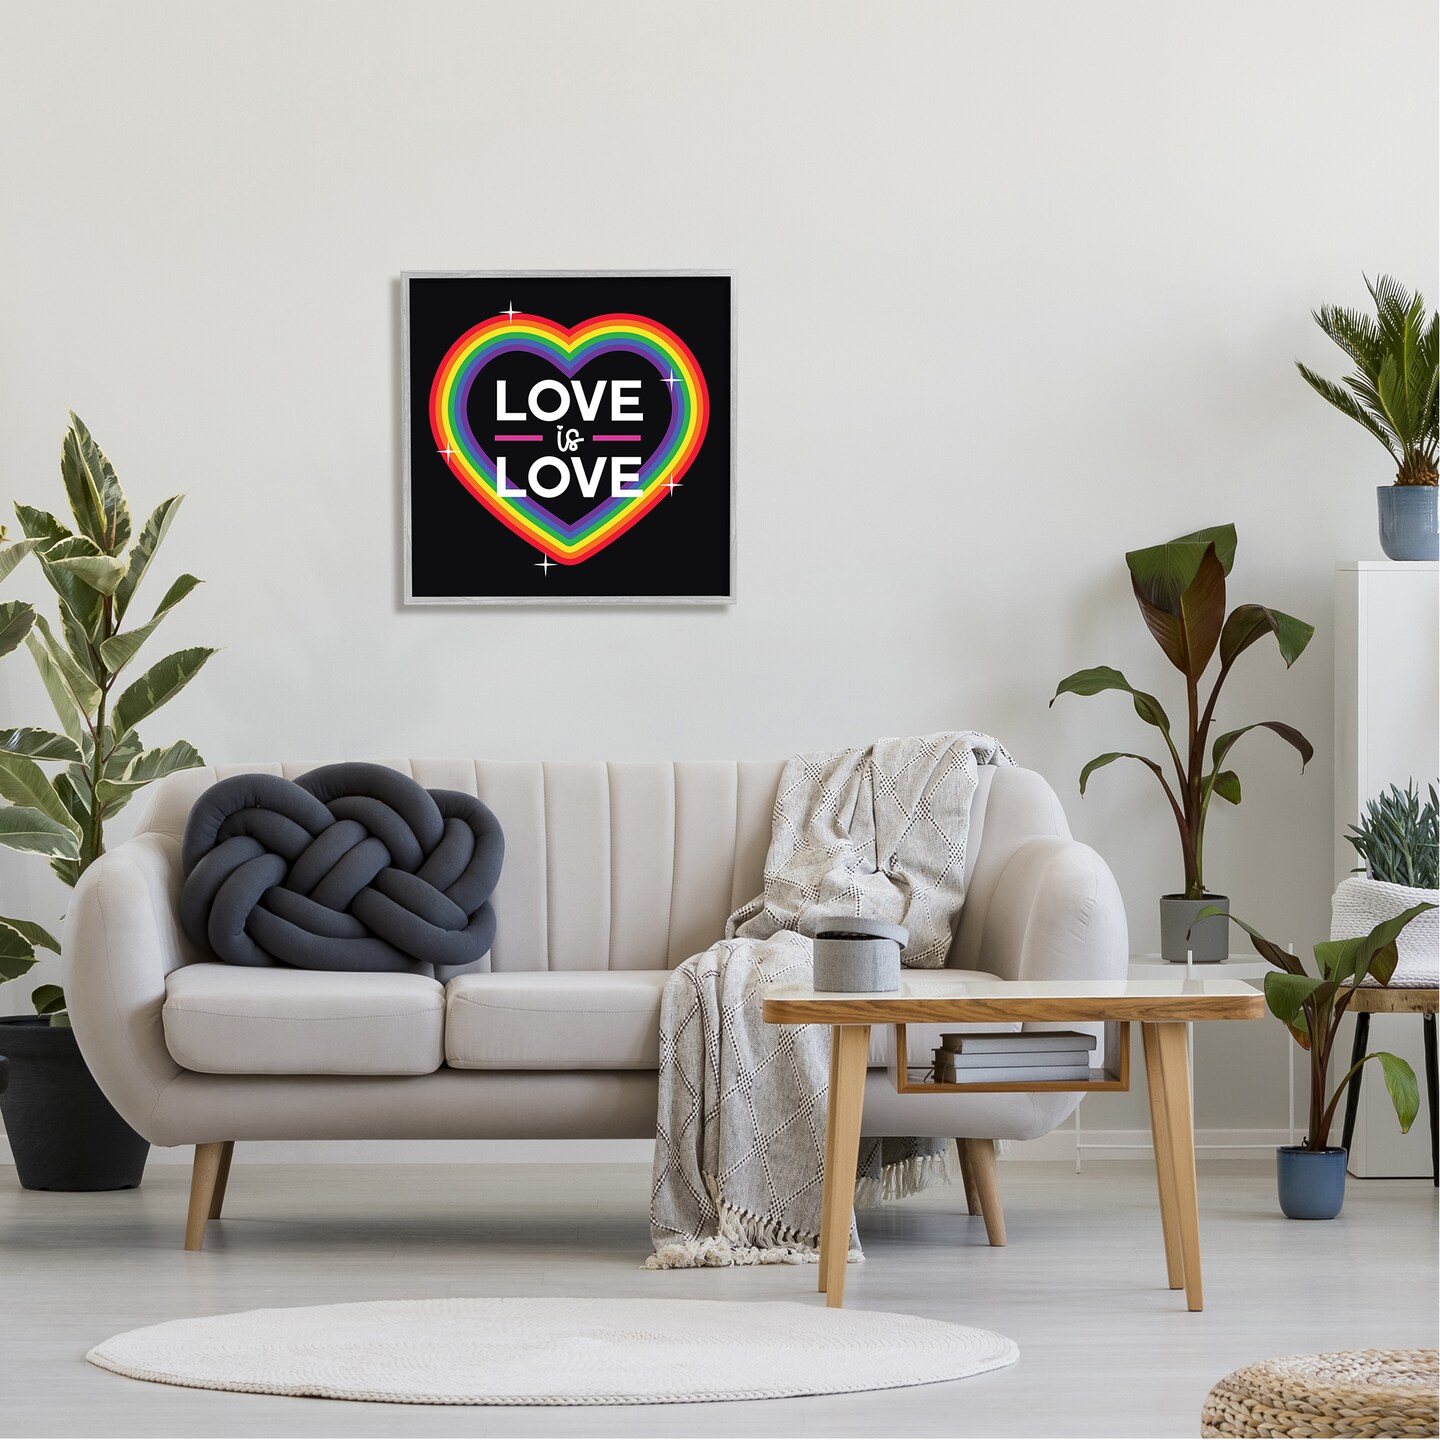 Stupell Industries Love Rainbow Heart Pride Black Framed Giclee Art